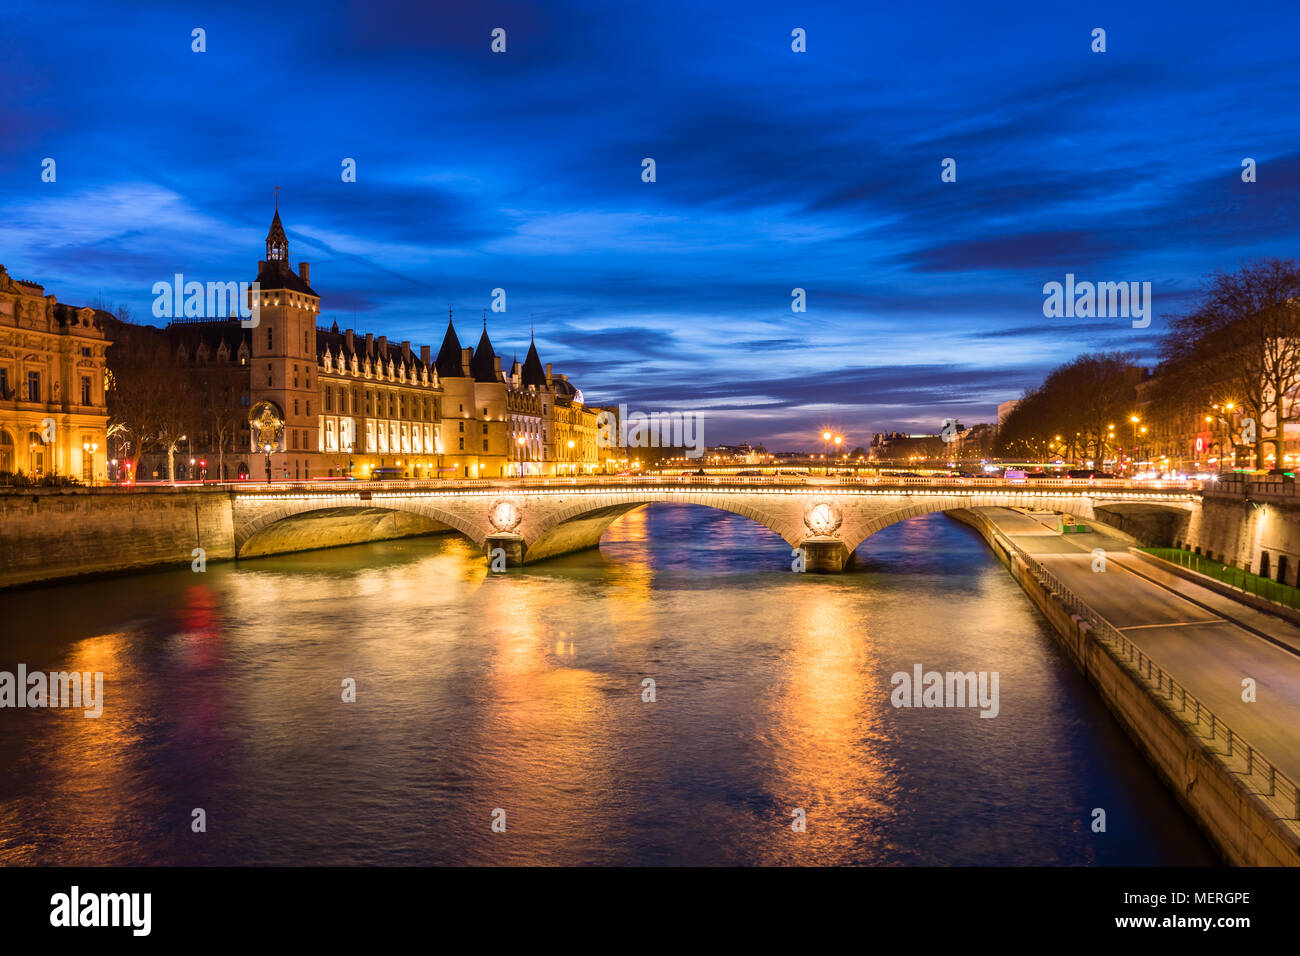 Centre-ville de Paris by night avec les quais de Seine et de la rue éclairée et historique parisien, de conciergerie sur Ile de la Cité, blu Banque D'Images